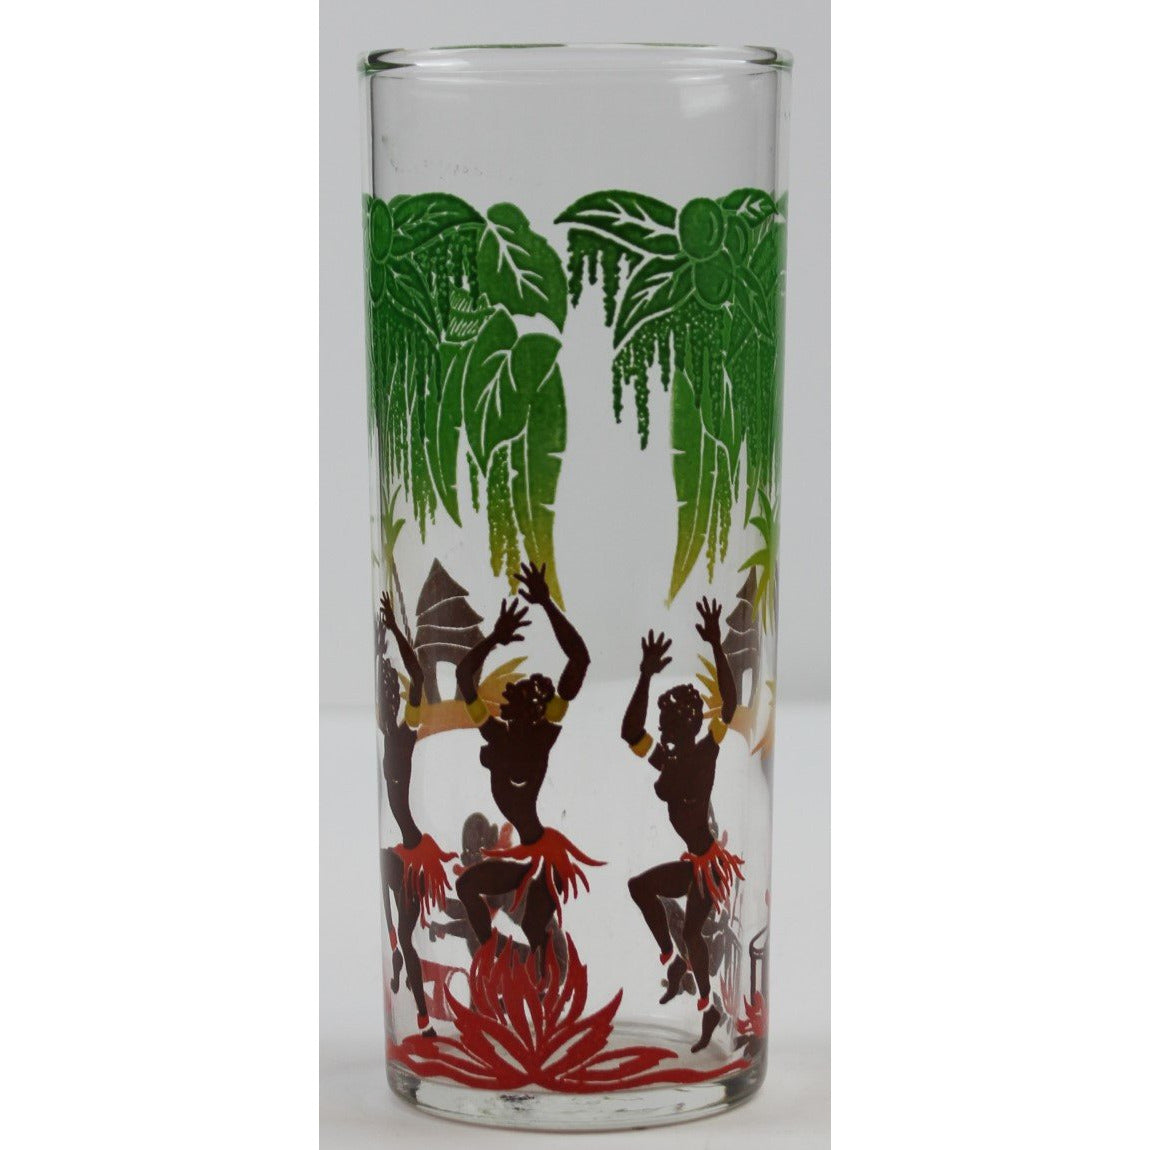 Pygmy Jungle Highball Glass